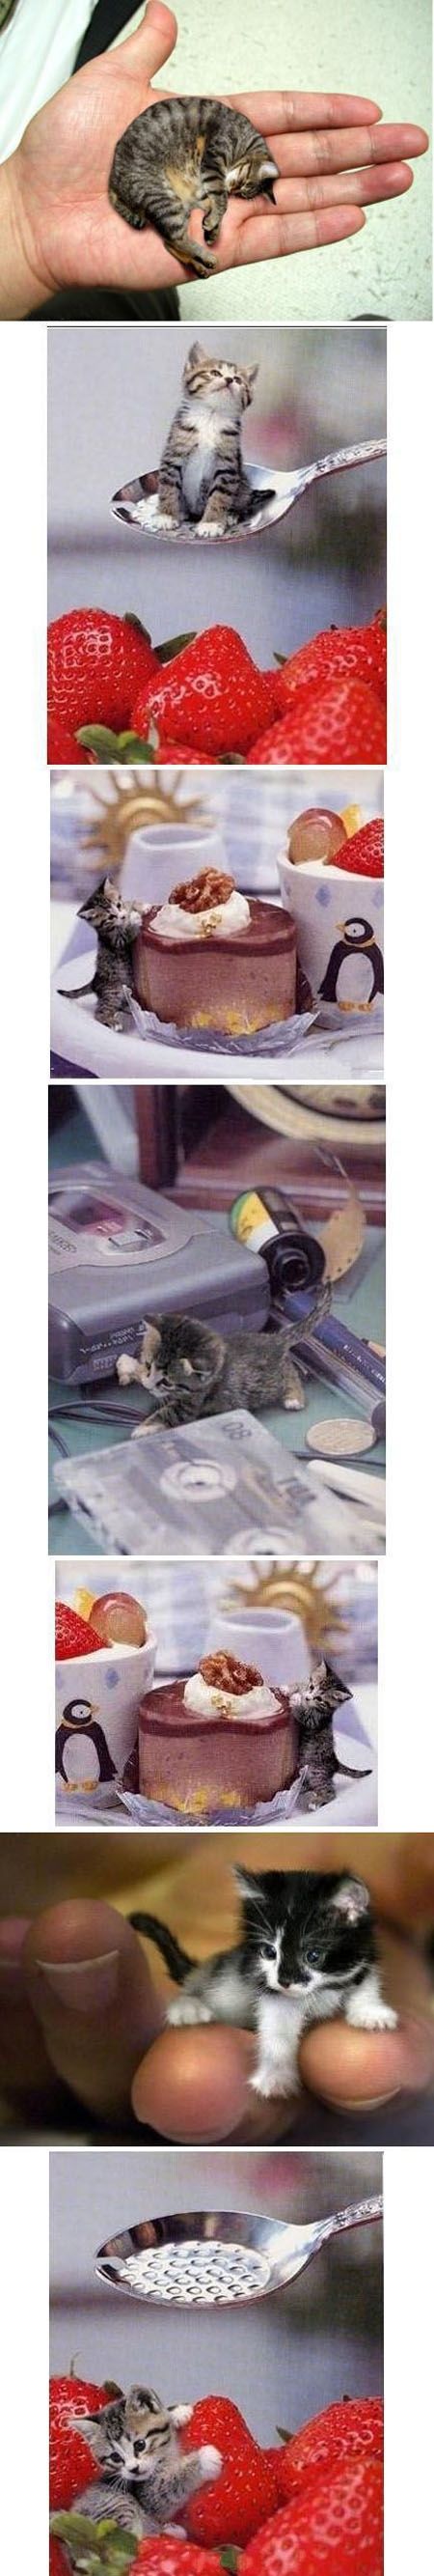 世界上最小的猫皮堡斯的图片 媒体的都震惊了